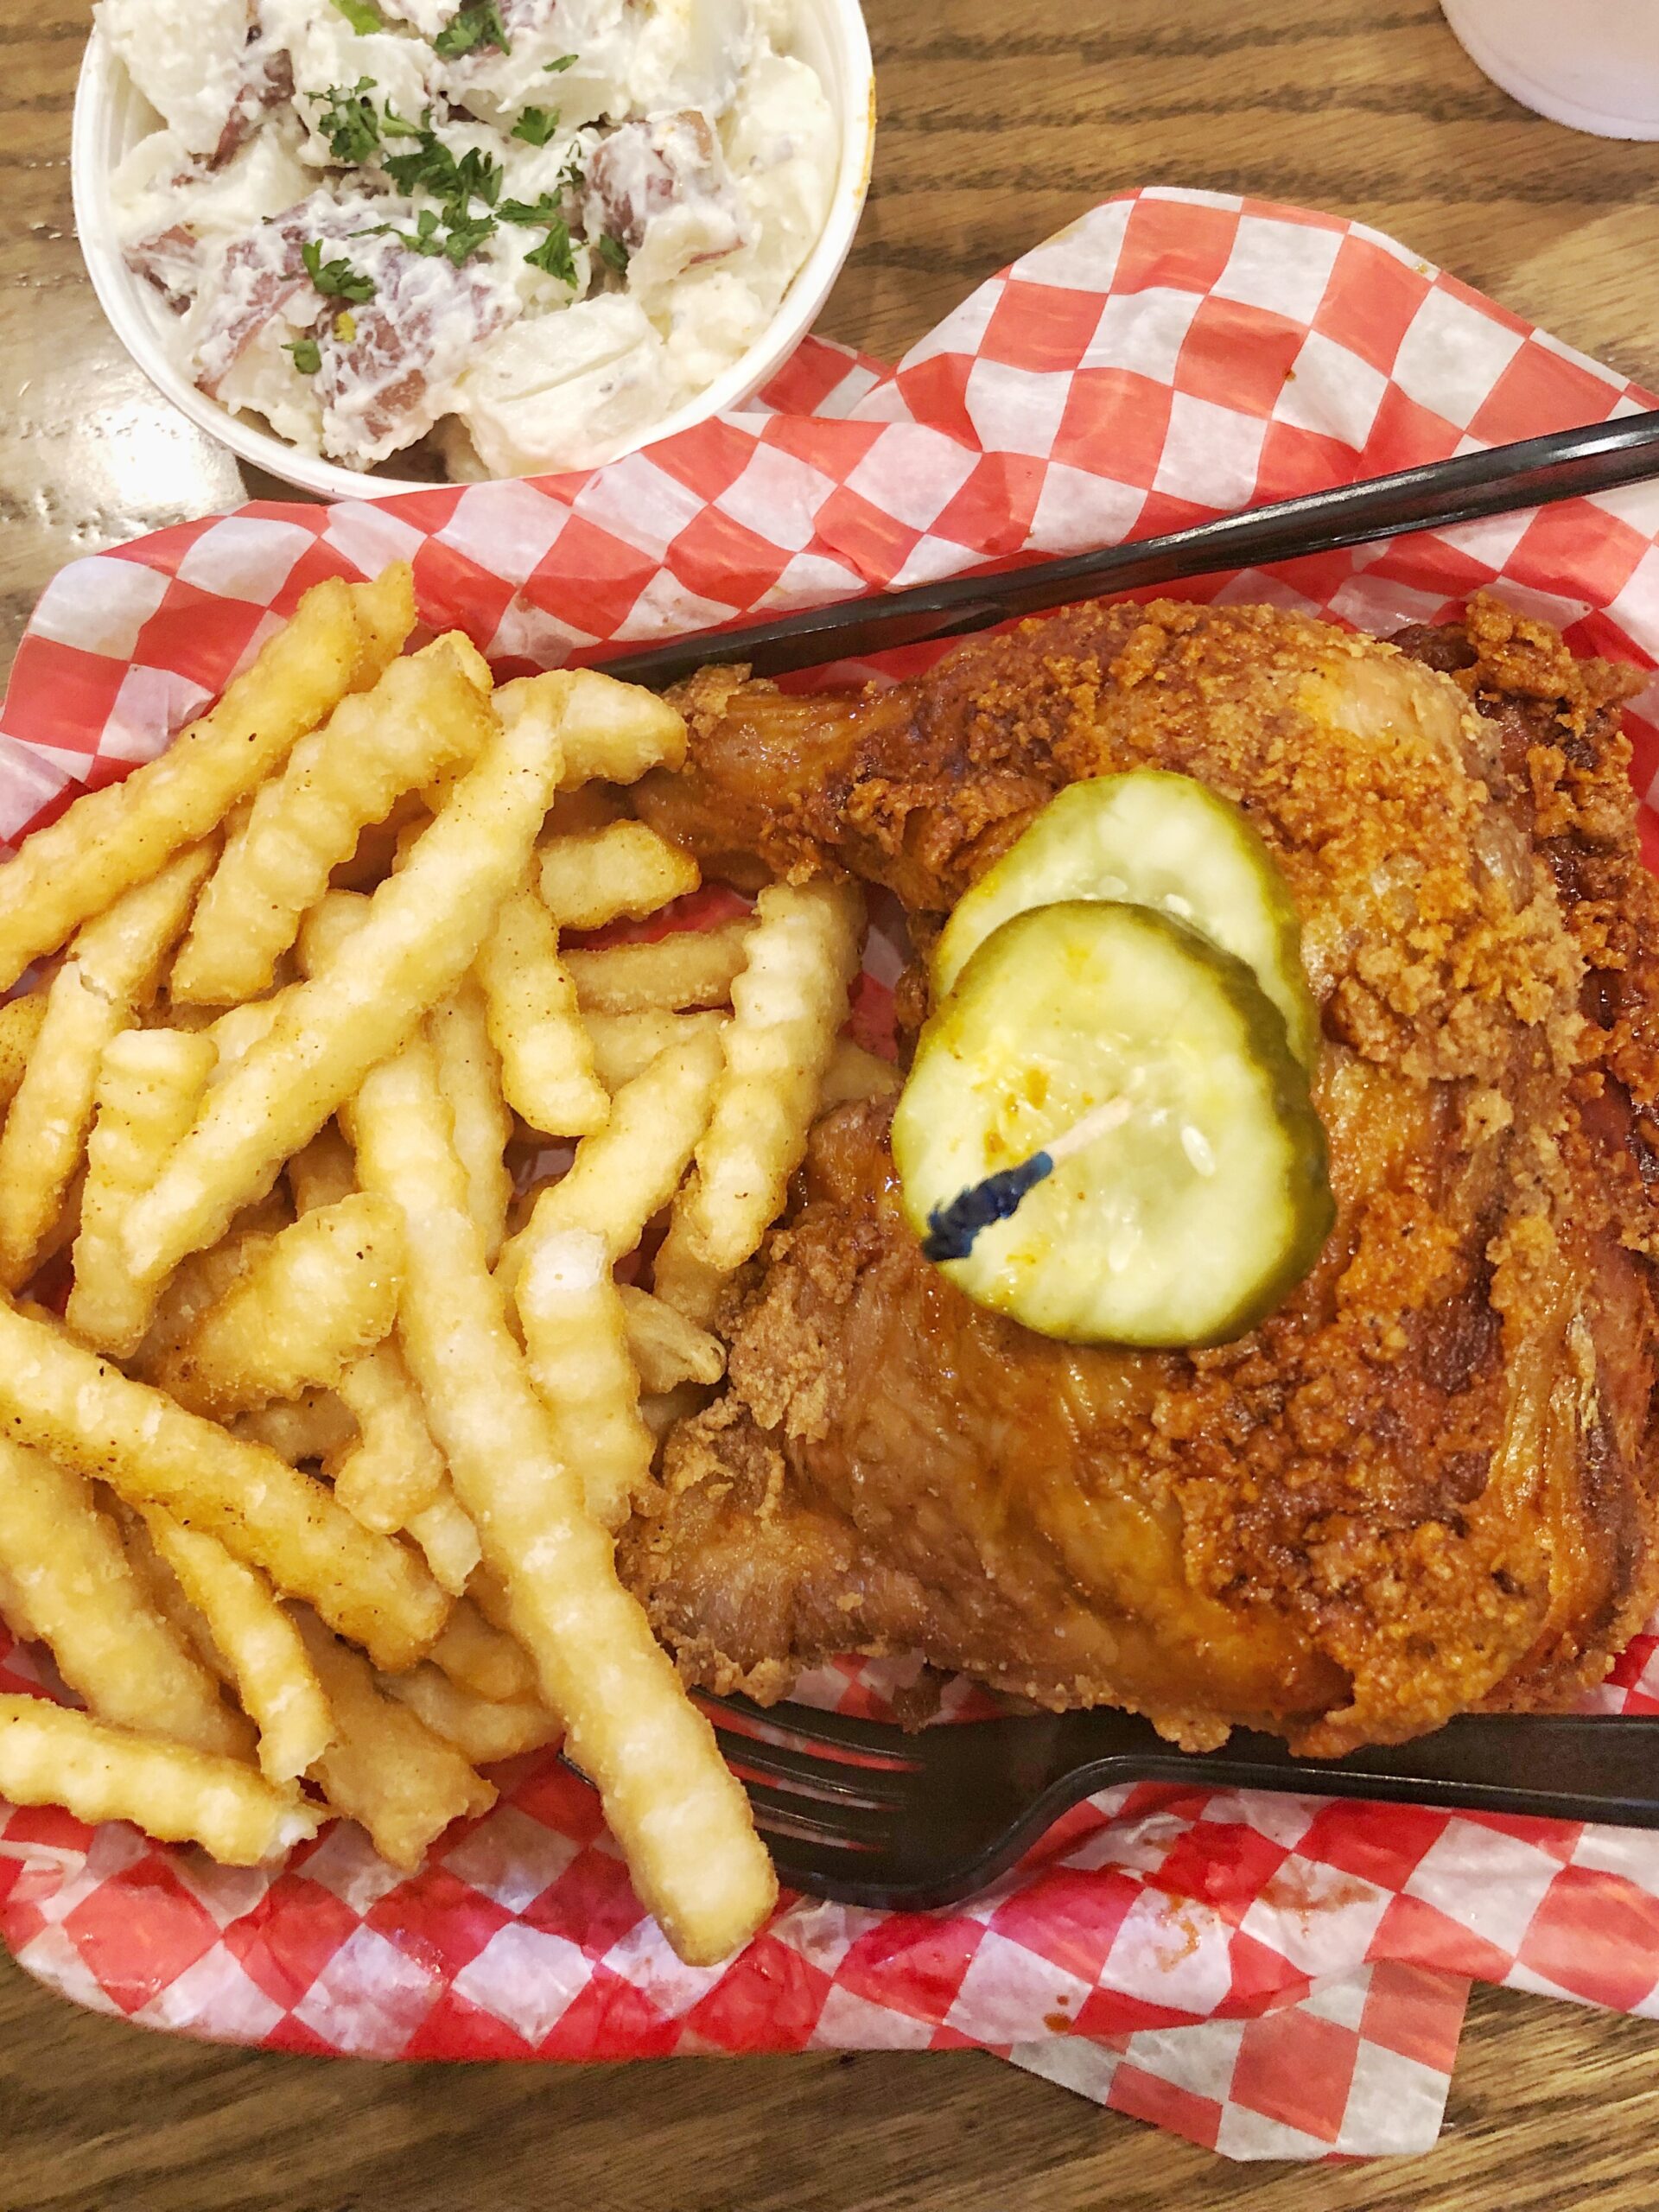 The best local restaurants in Nashville, TN - Hattie B's hot chicken, potato salad, and French fries